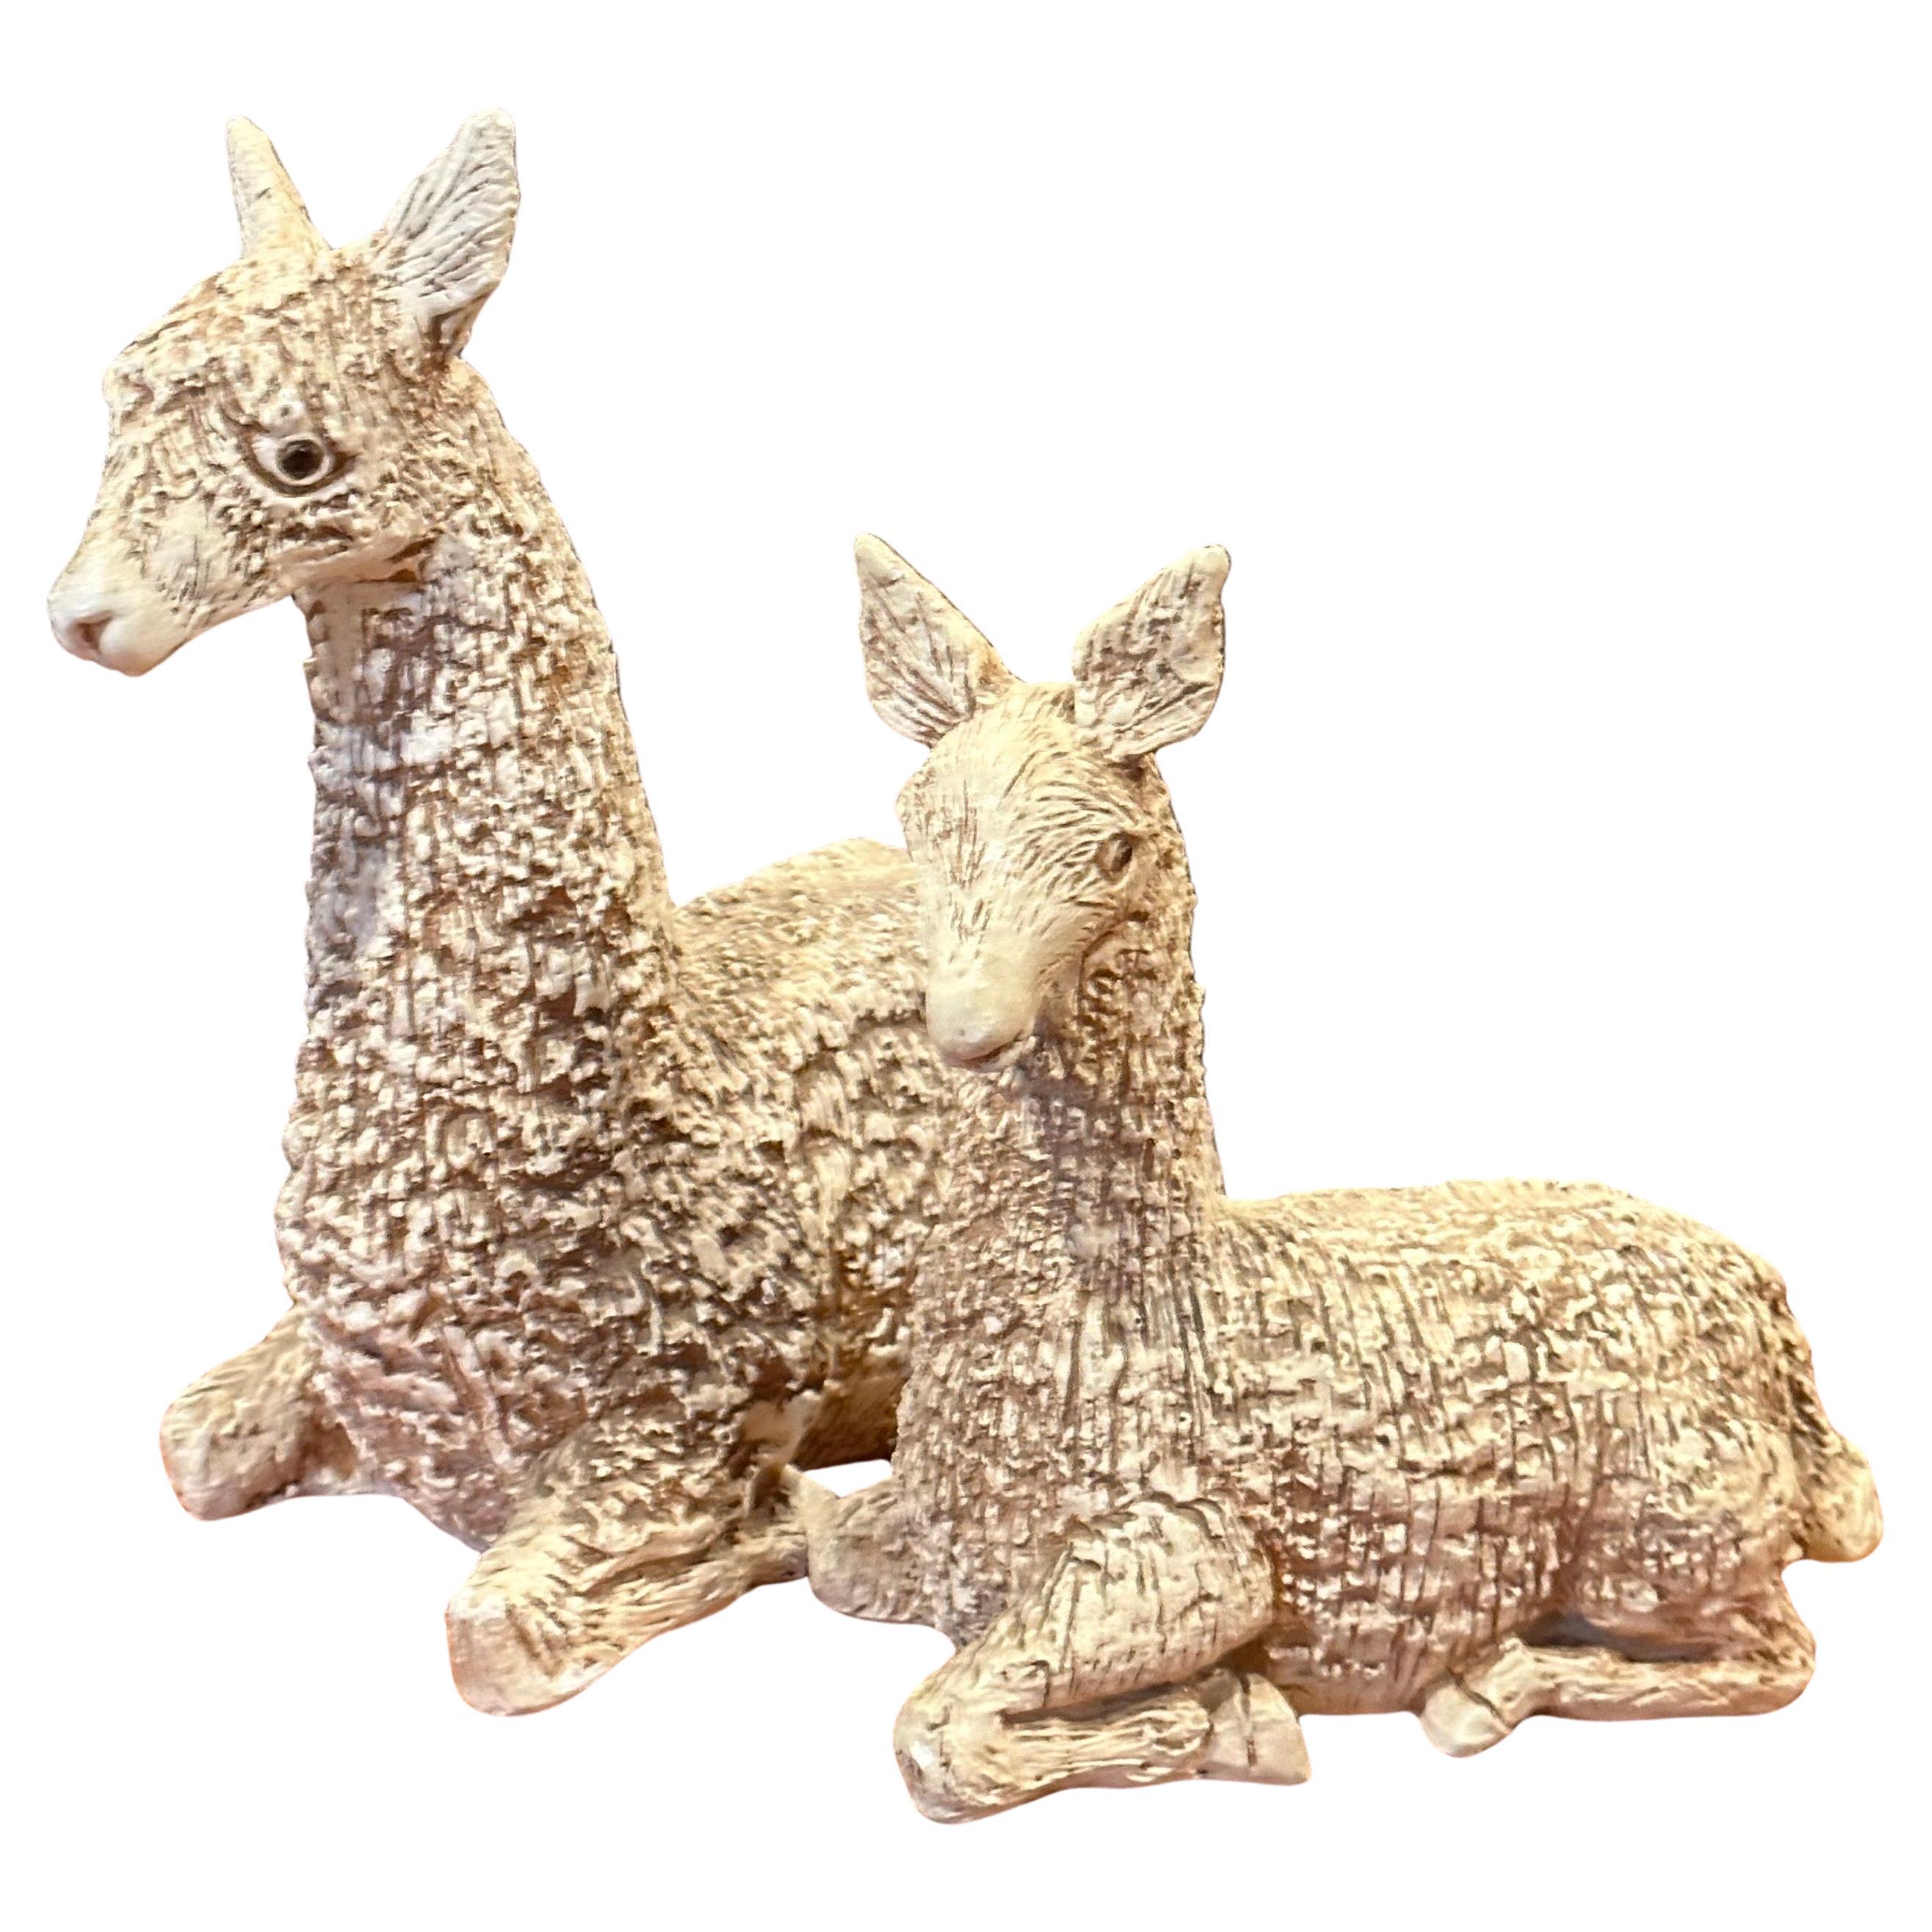 Une paire de lamas en grès ou en plâtre du milieu du siècle par Jaru, vers 1979. La mère et le bébé lama ont été magnifiquement sculptés avec une texture profonde et saisissante, puis émaillés pour leur donner une riche couleur beige foncé.

La mère